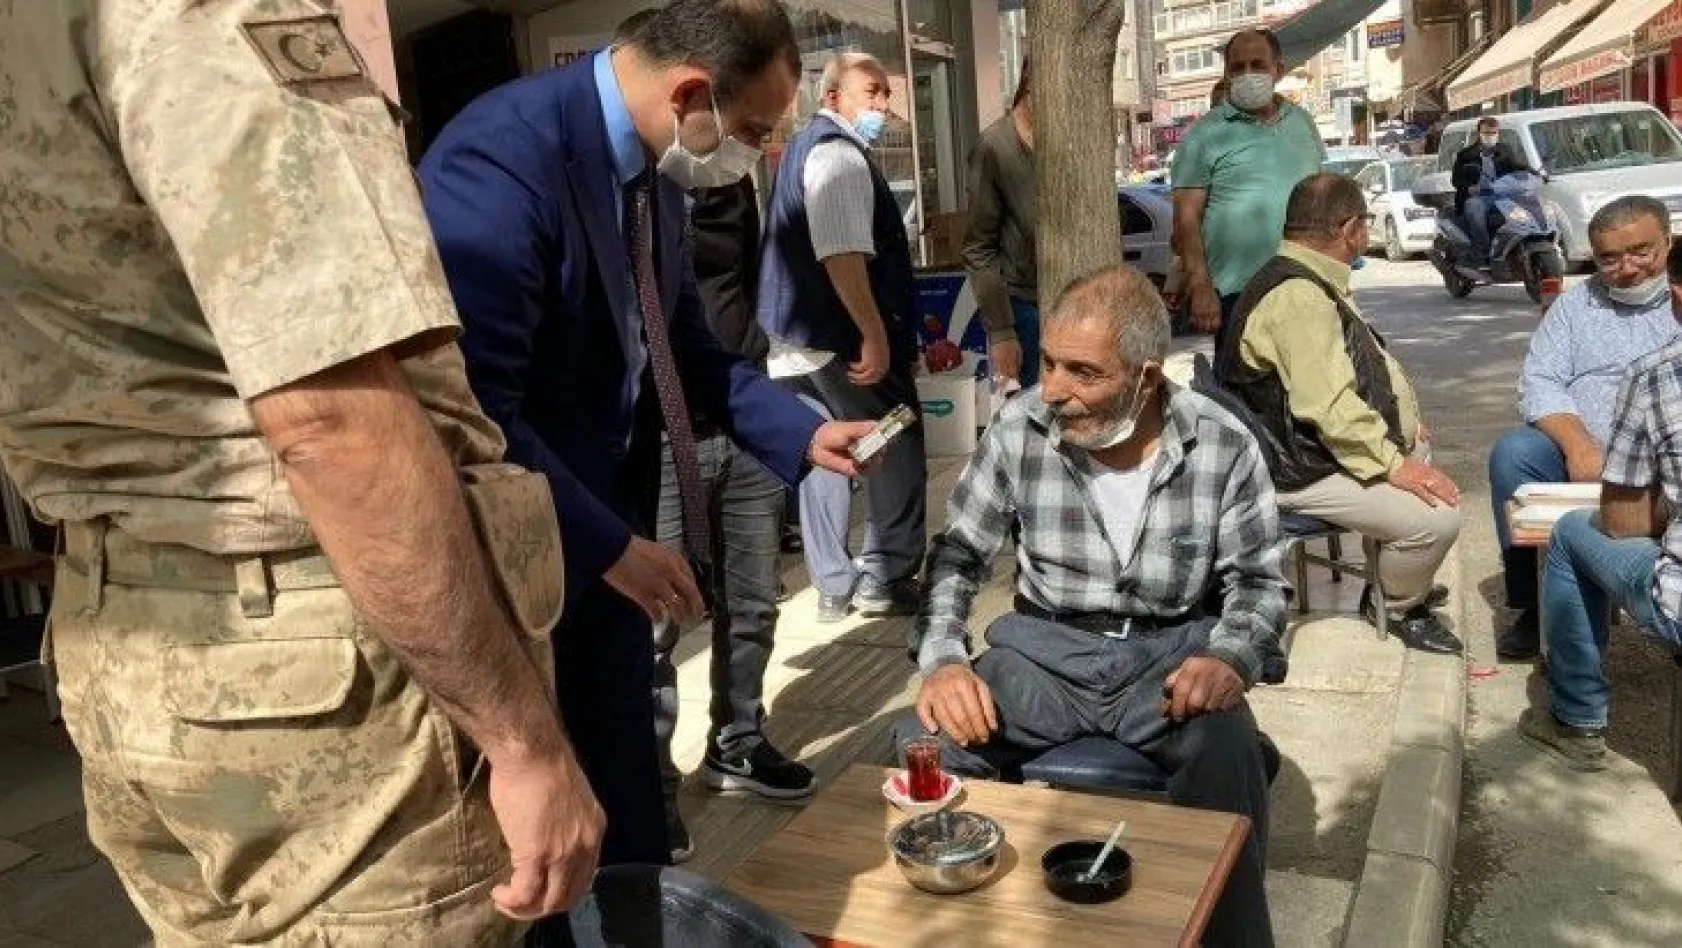 Vali Yardımcısı Abbasoğlu, bir kişiye sigarayı bıraktırdı